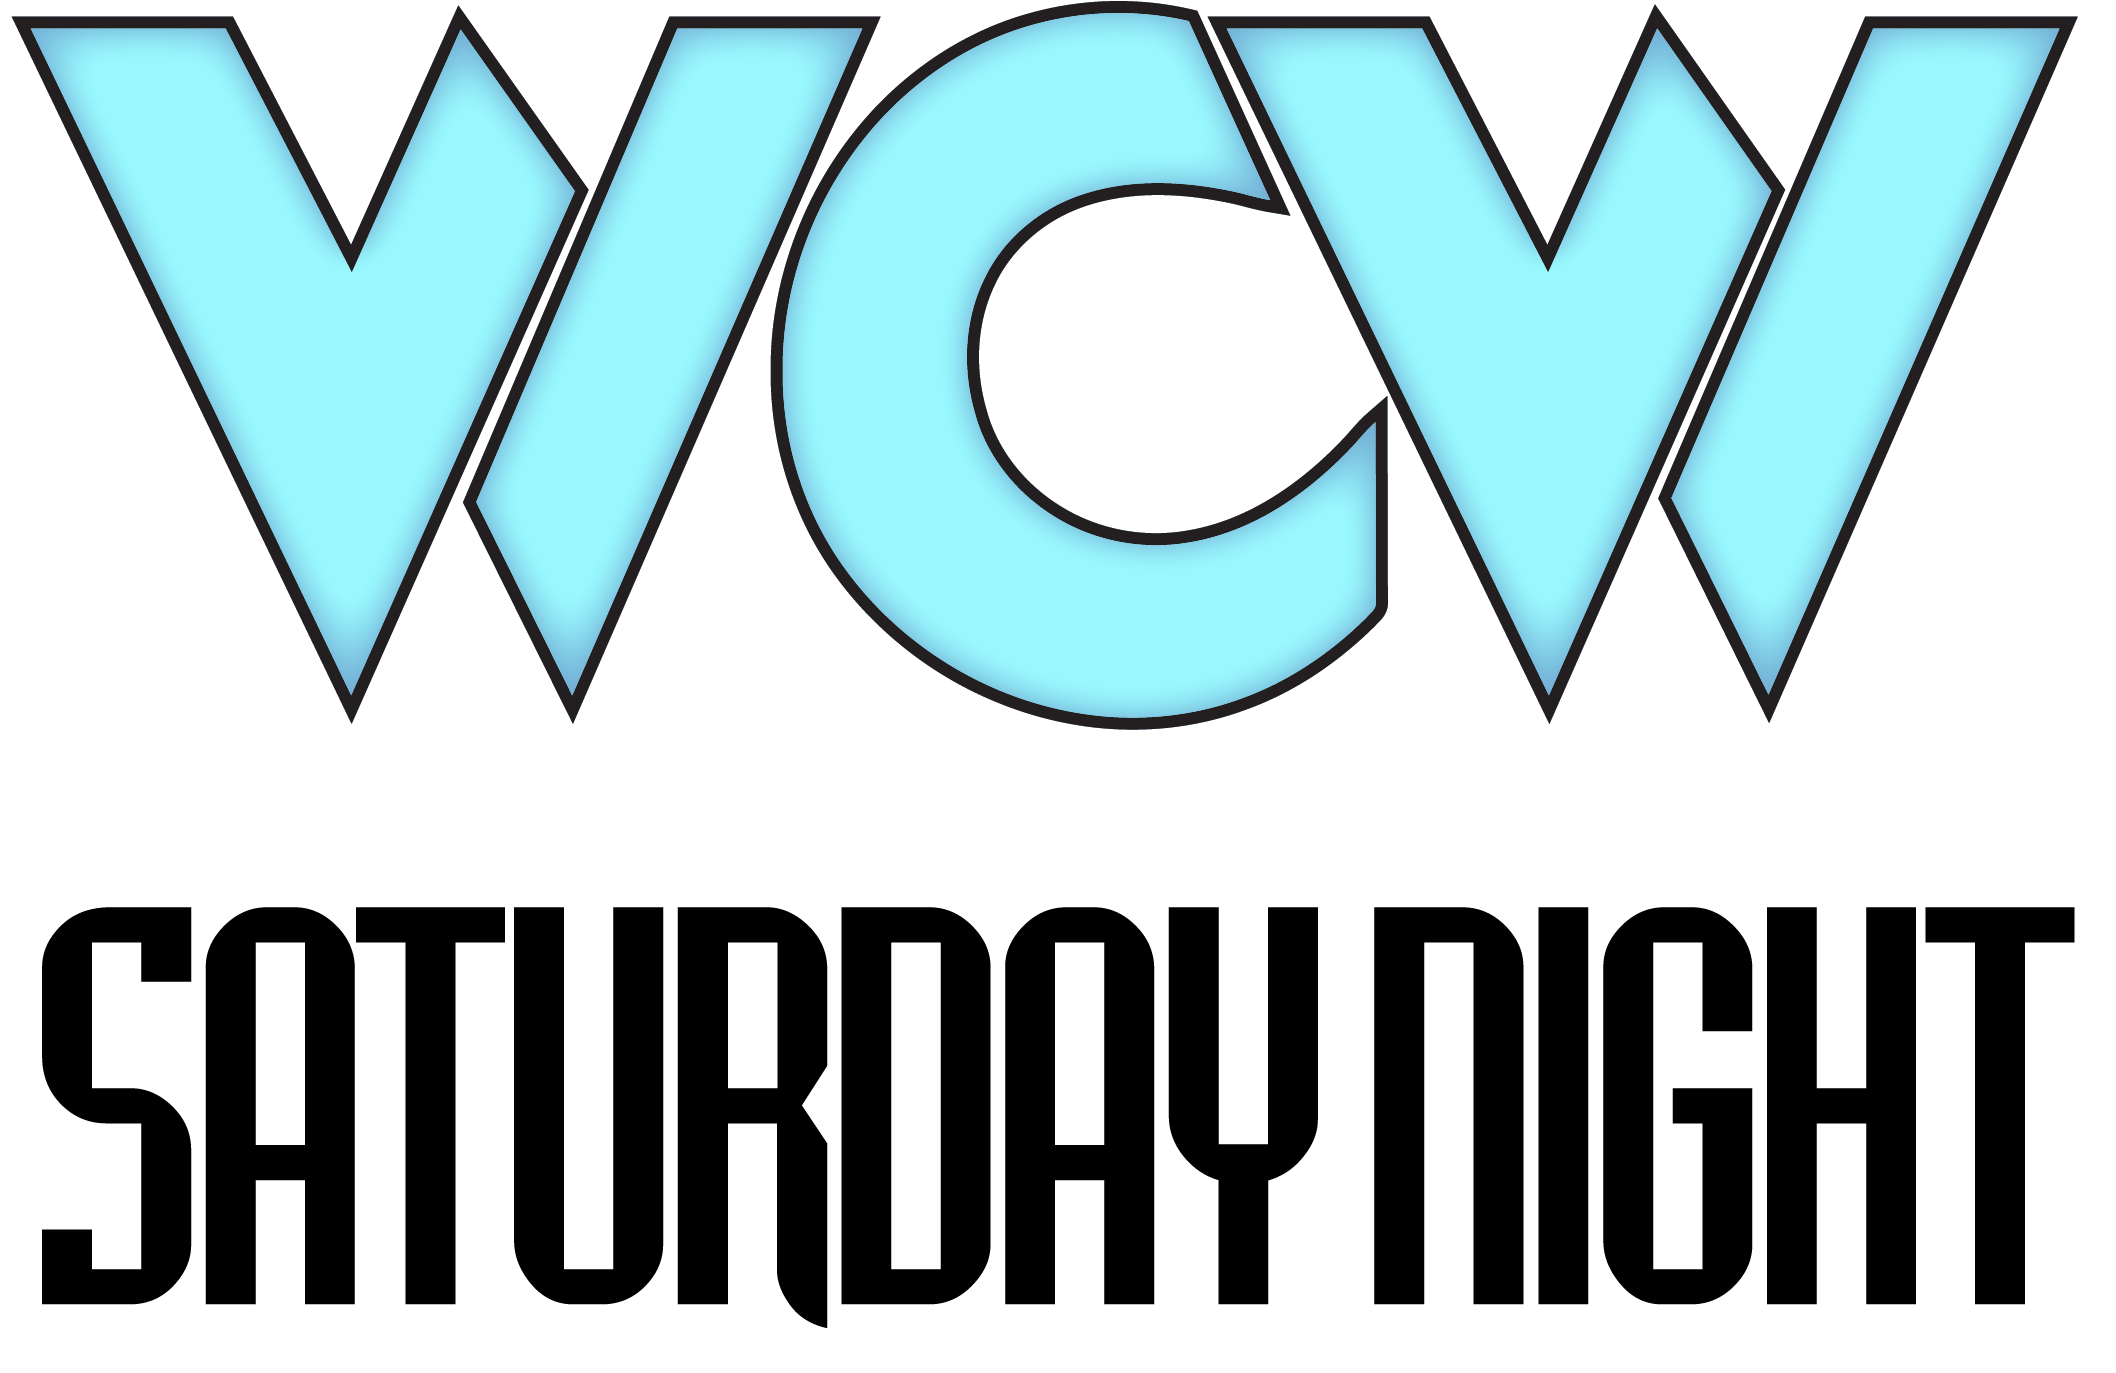 File - Wcwsaturdaynightlogo - Wcw Saturday Night Logo (2145x1388), Png Download